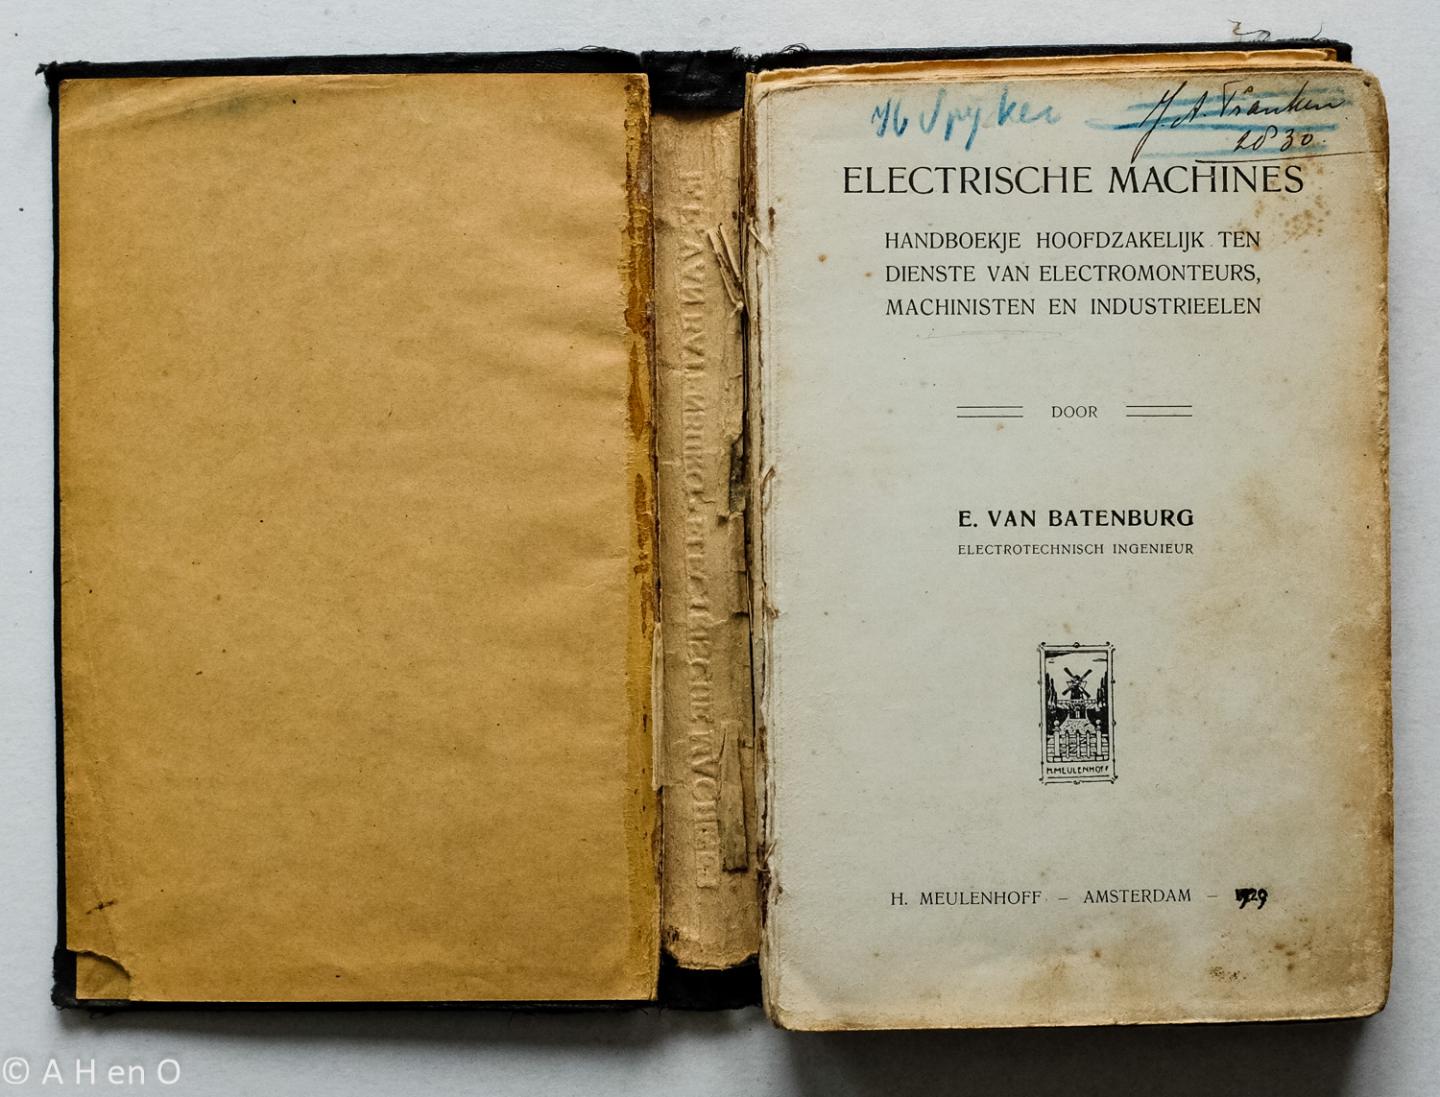 Batenburg, E. van - Electrische machines : handboekje hoofdzakelijk ten dienste van electromonteurs, machinisten en industrieelen